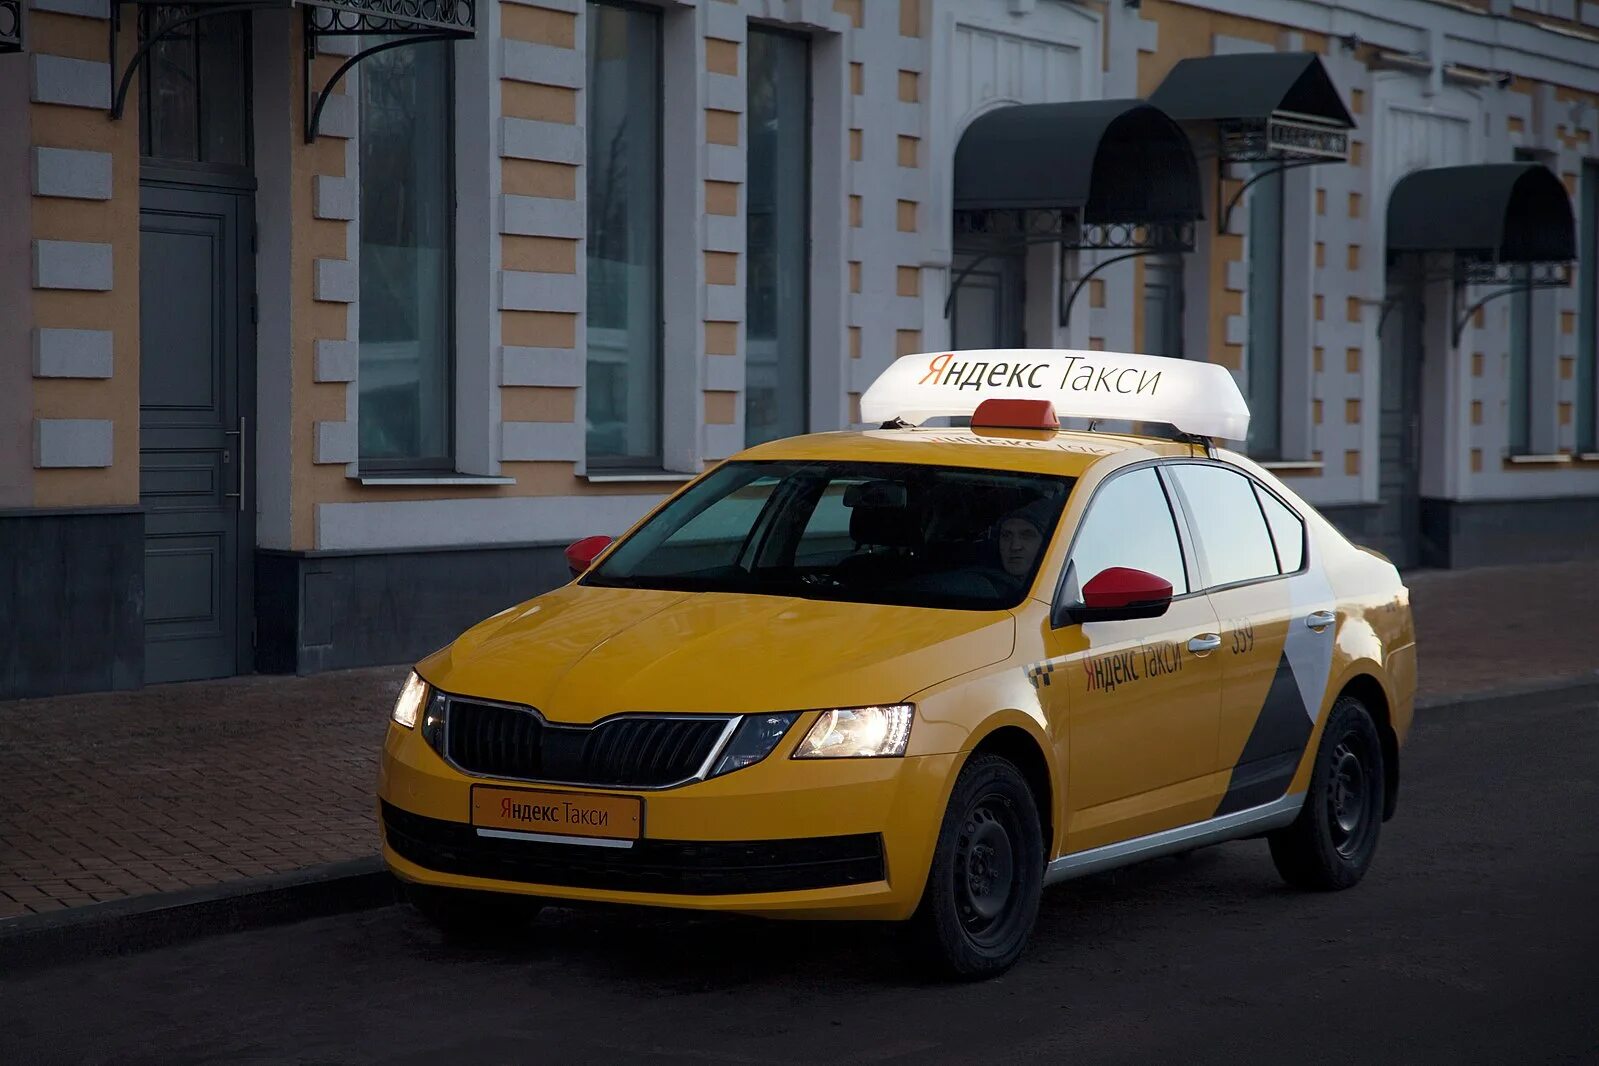 Фото такси машин. Таксопарк Яндекс такси в Москве. Яндекс макси. Яндекс машина. Яндекс такси машины.